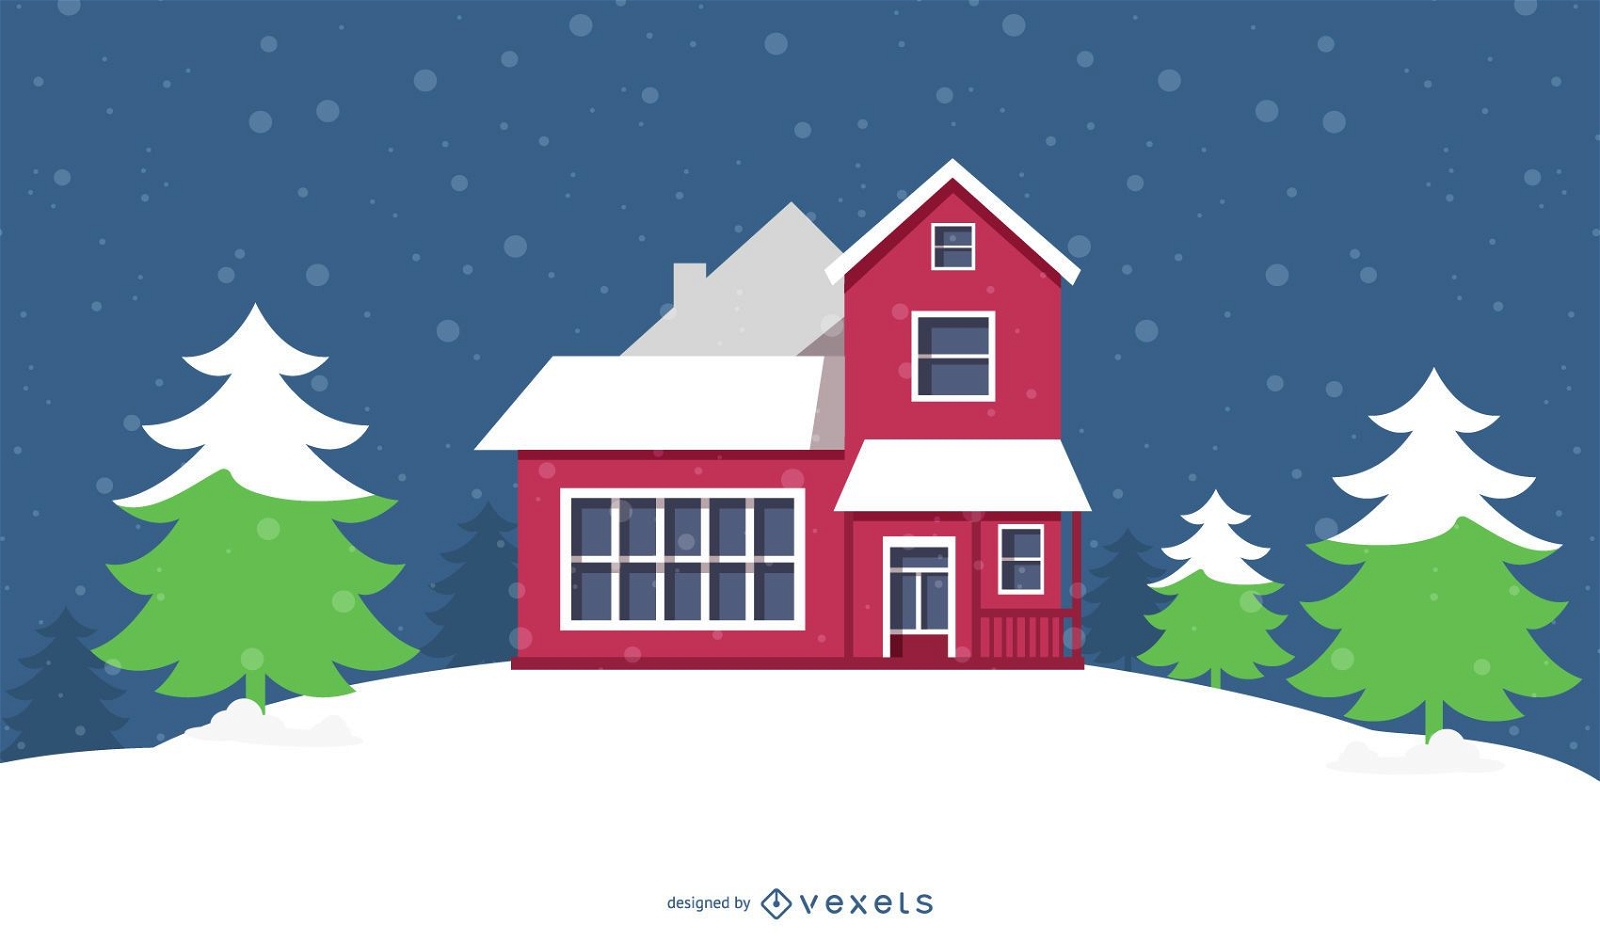 Snowy Cottage mit Weihnachtsb?umen & Schneeflocken